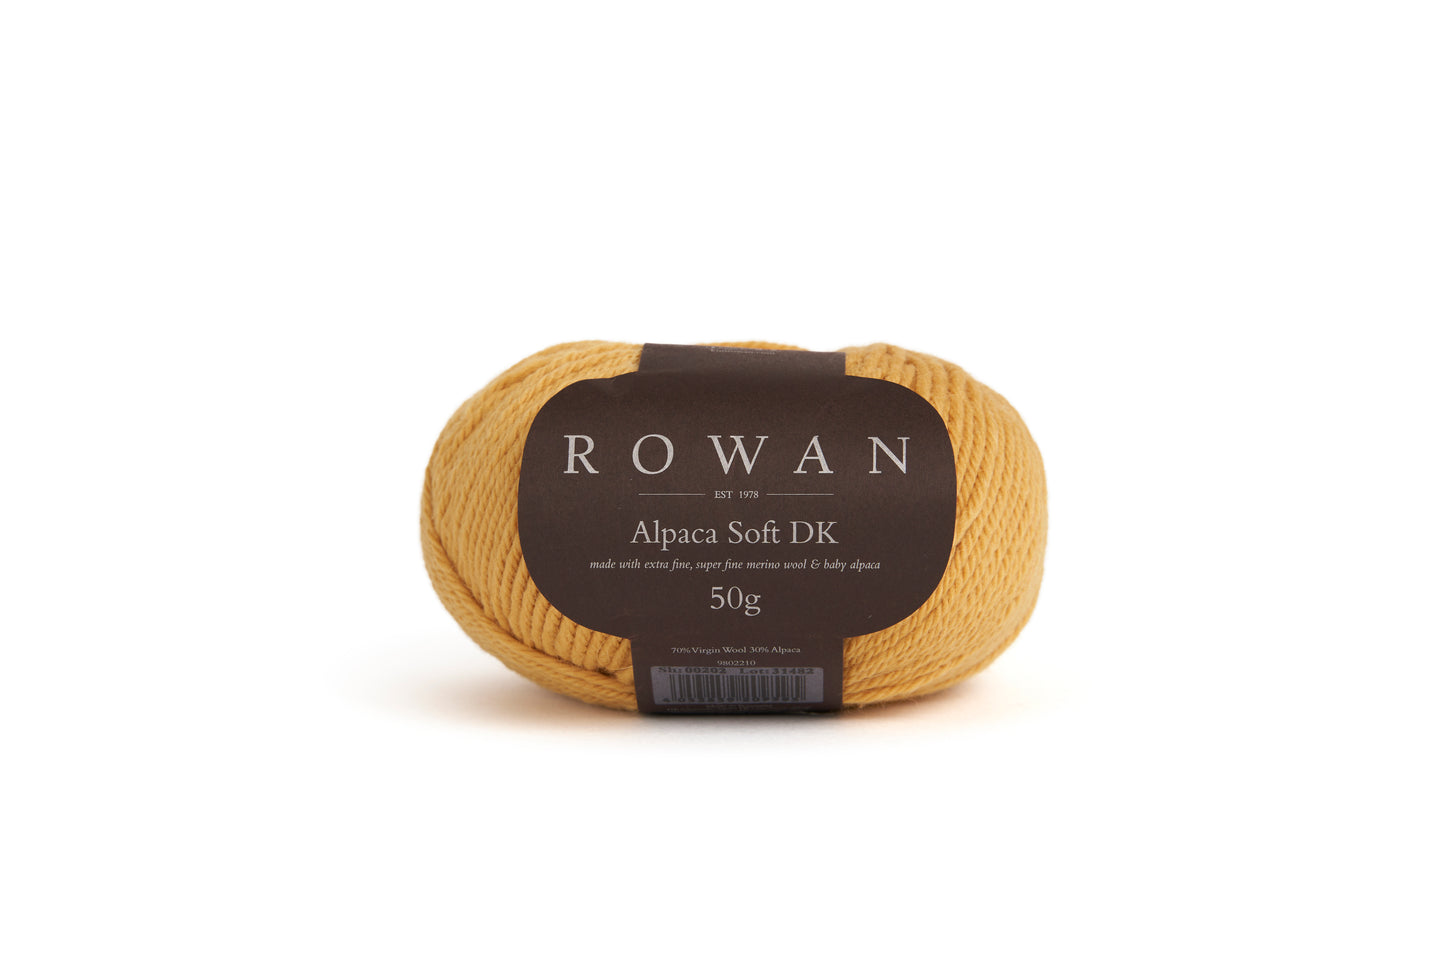 Rowan Alpaca Soft DK